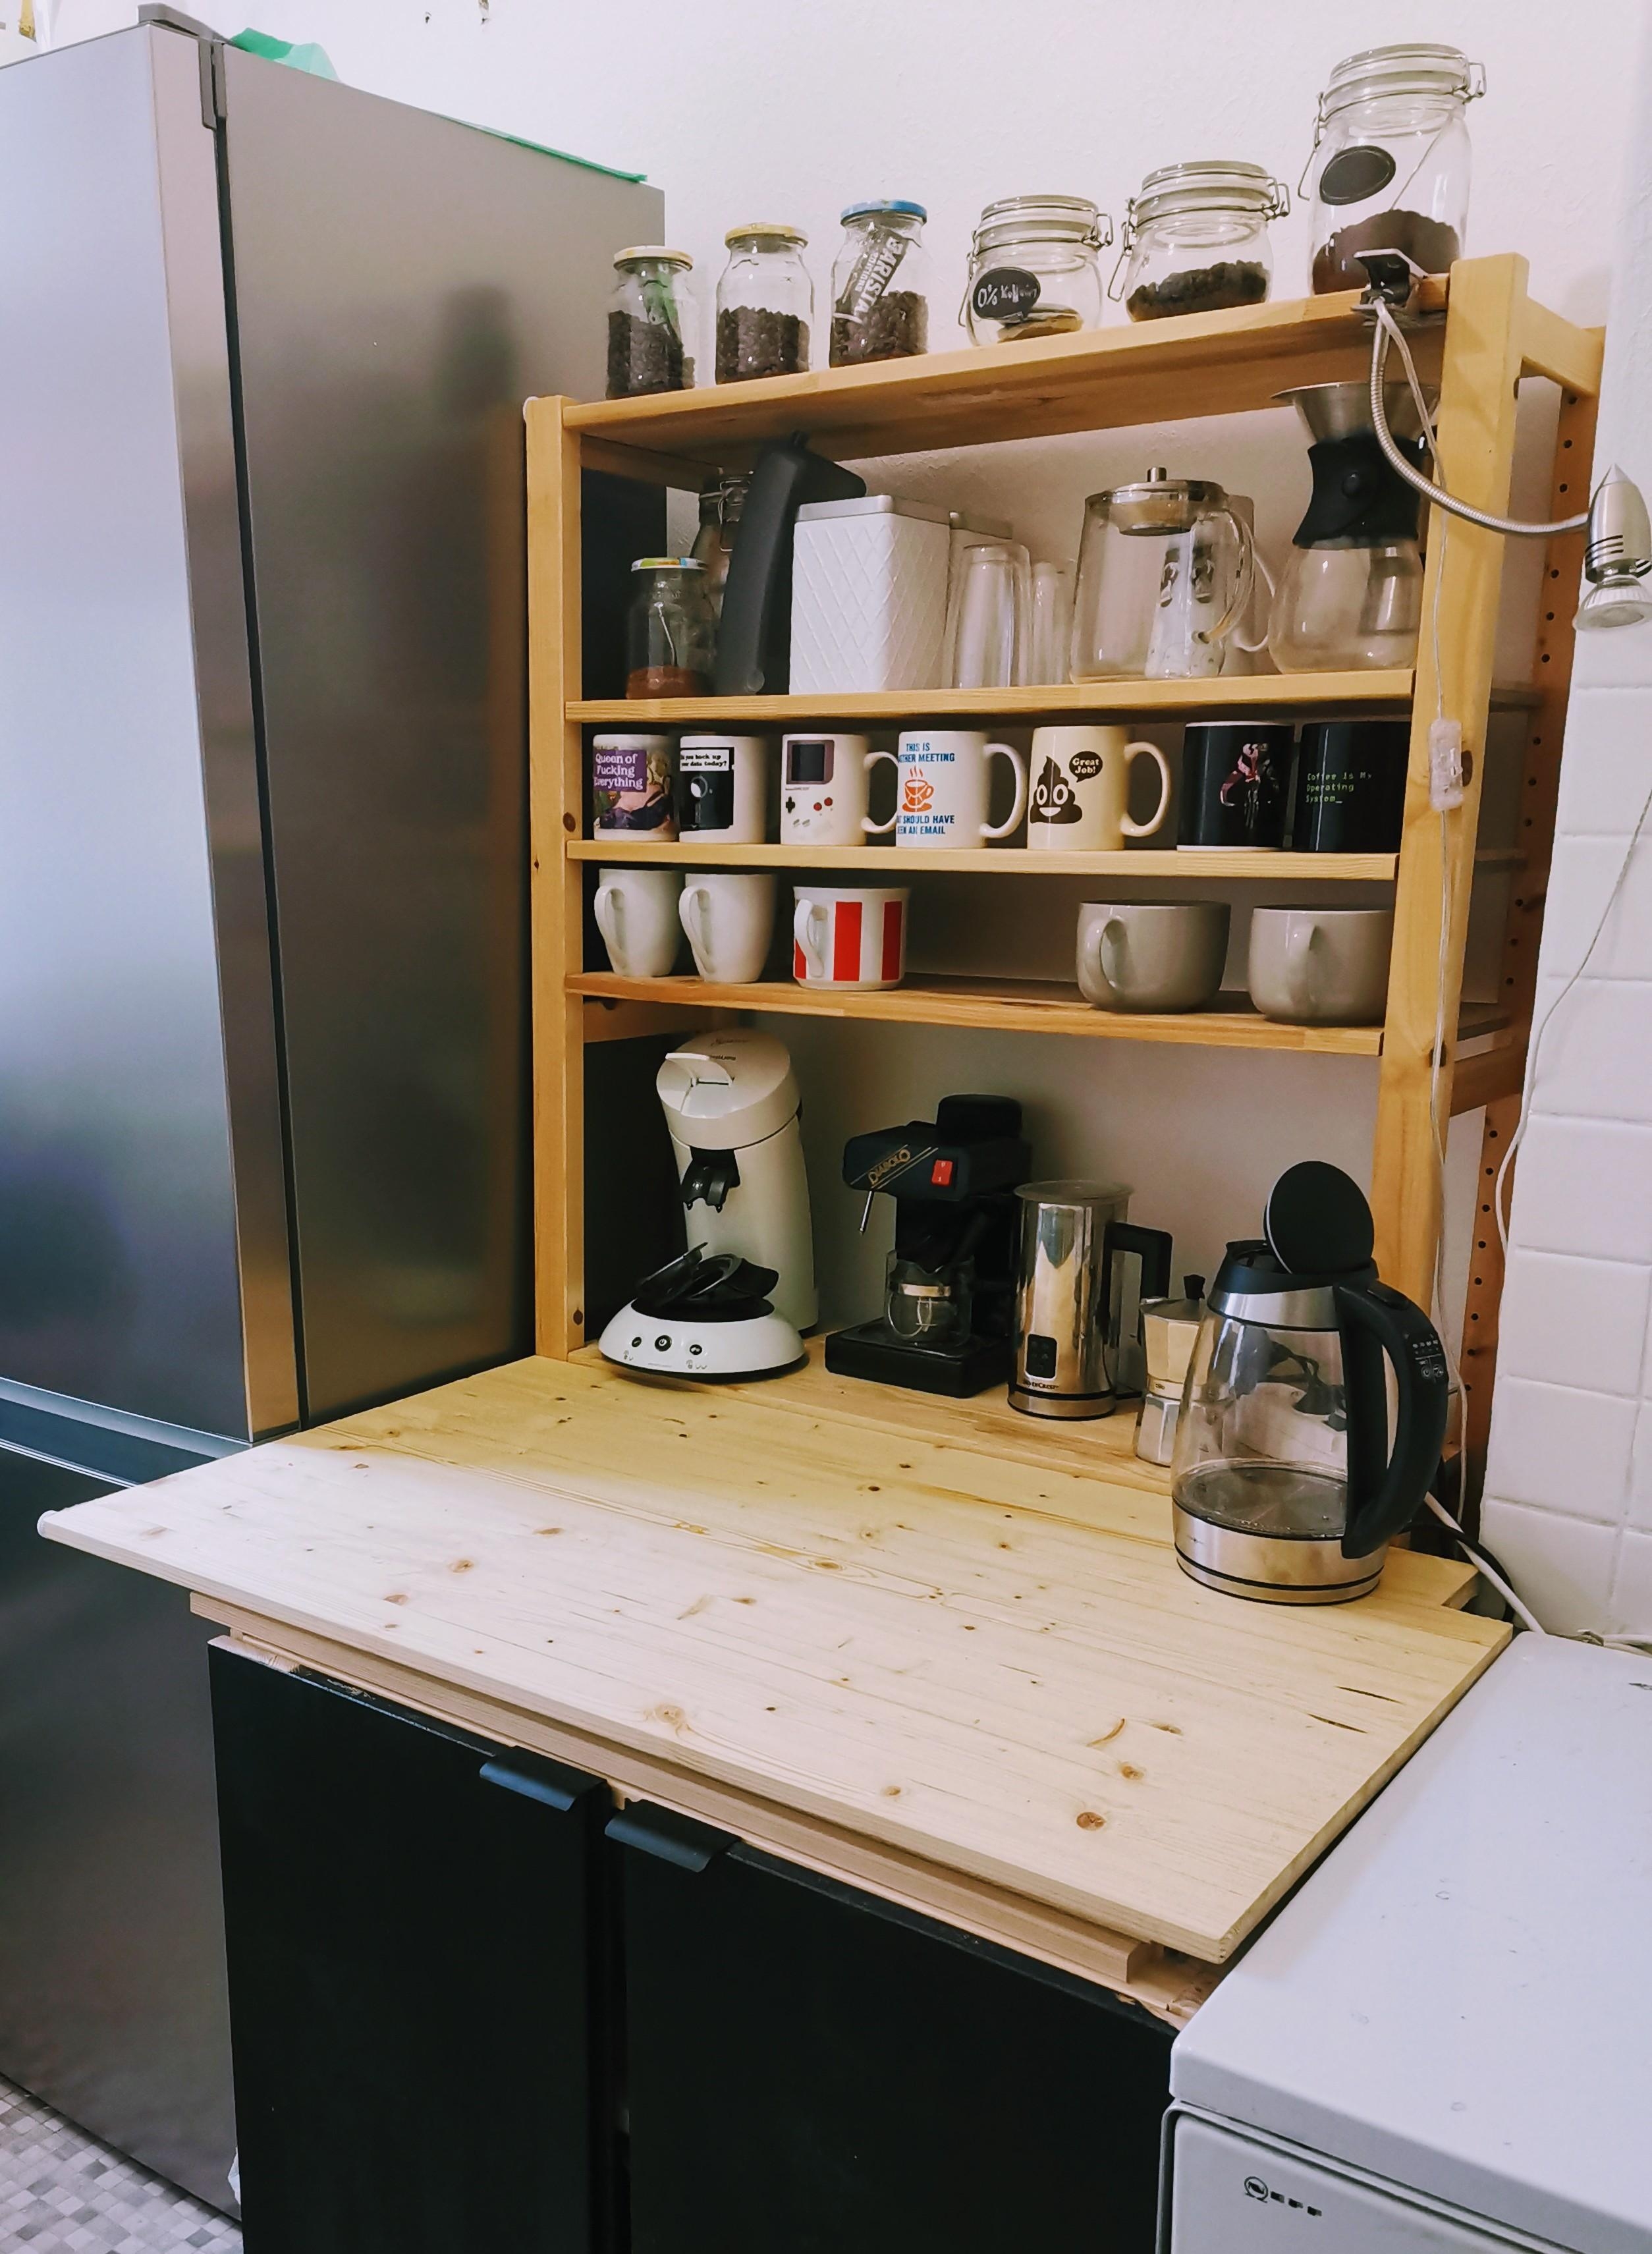 Kaffeeecke in der DIY-Küche, natürlich mit Altbau-Schieflage ;)